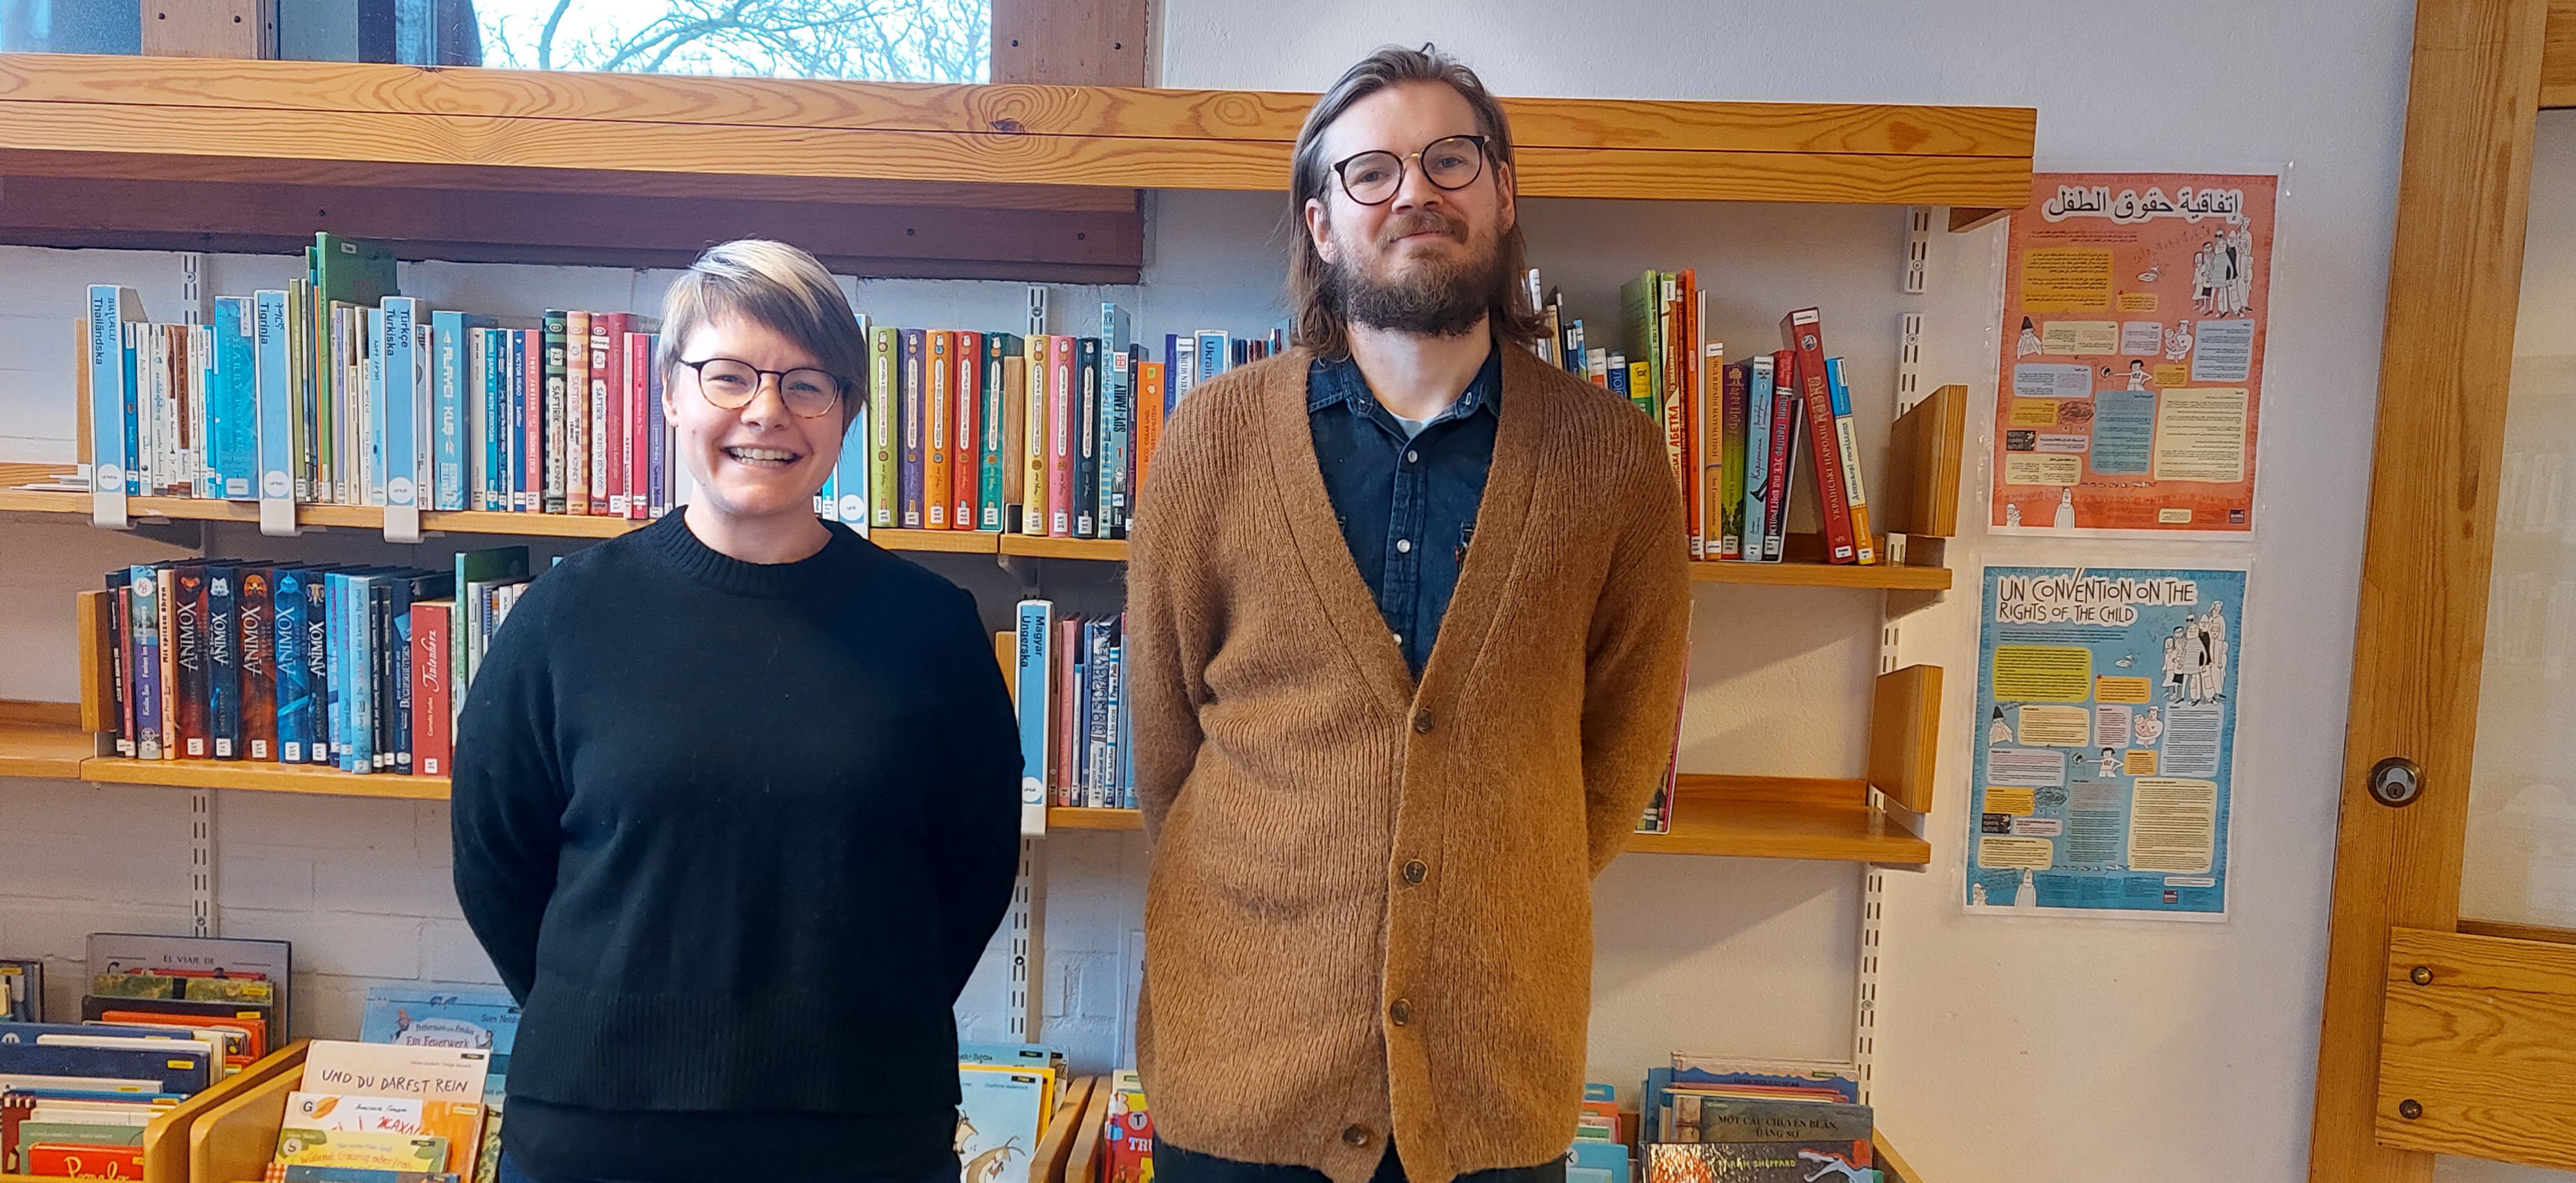 Bibliotekarierna Caroline och Oskar står framför en hylla med barnböcker